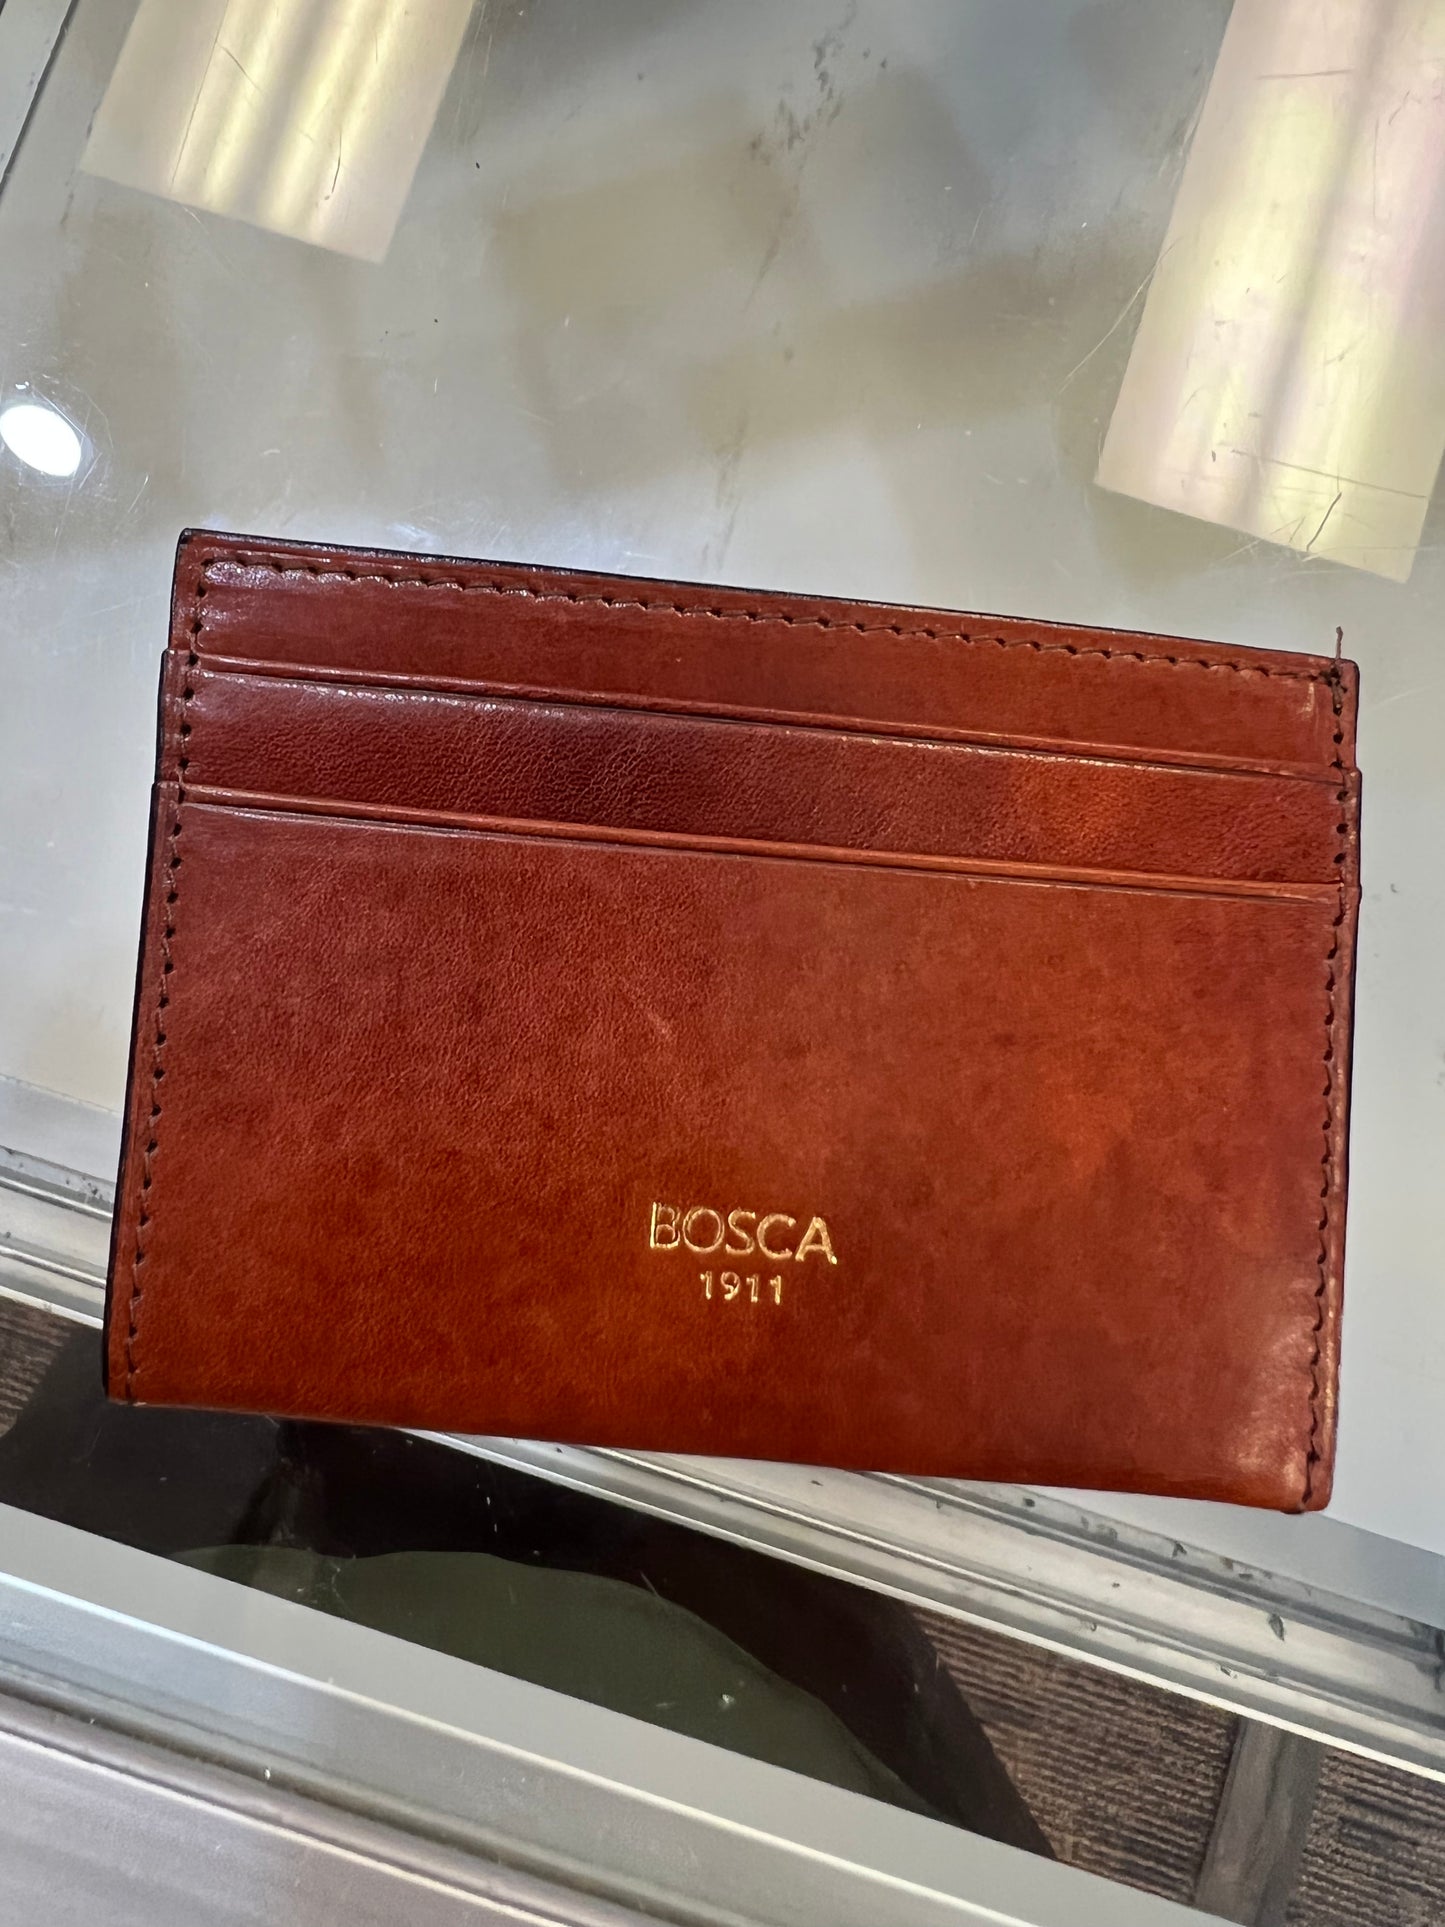 Bosca Weekend Leather Wallet